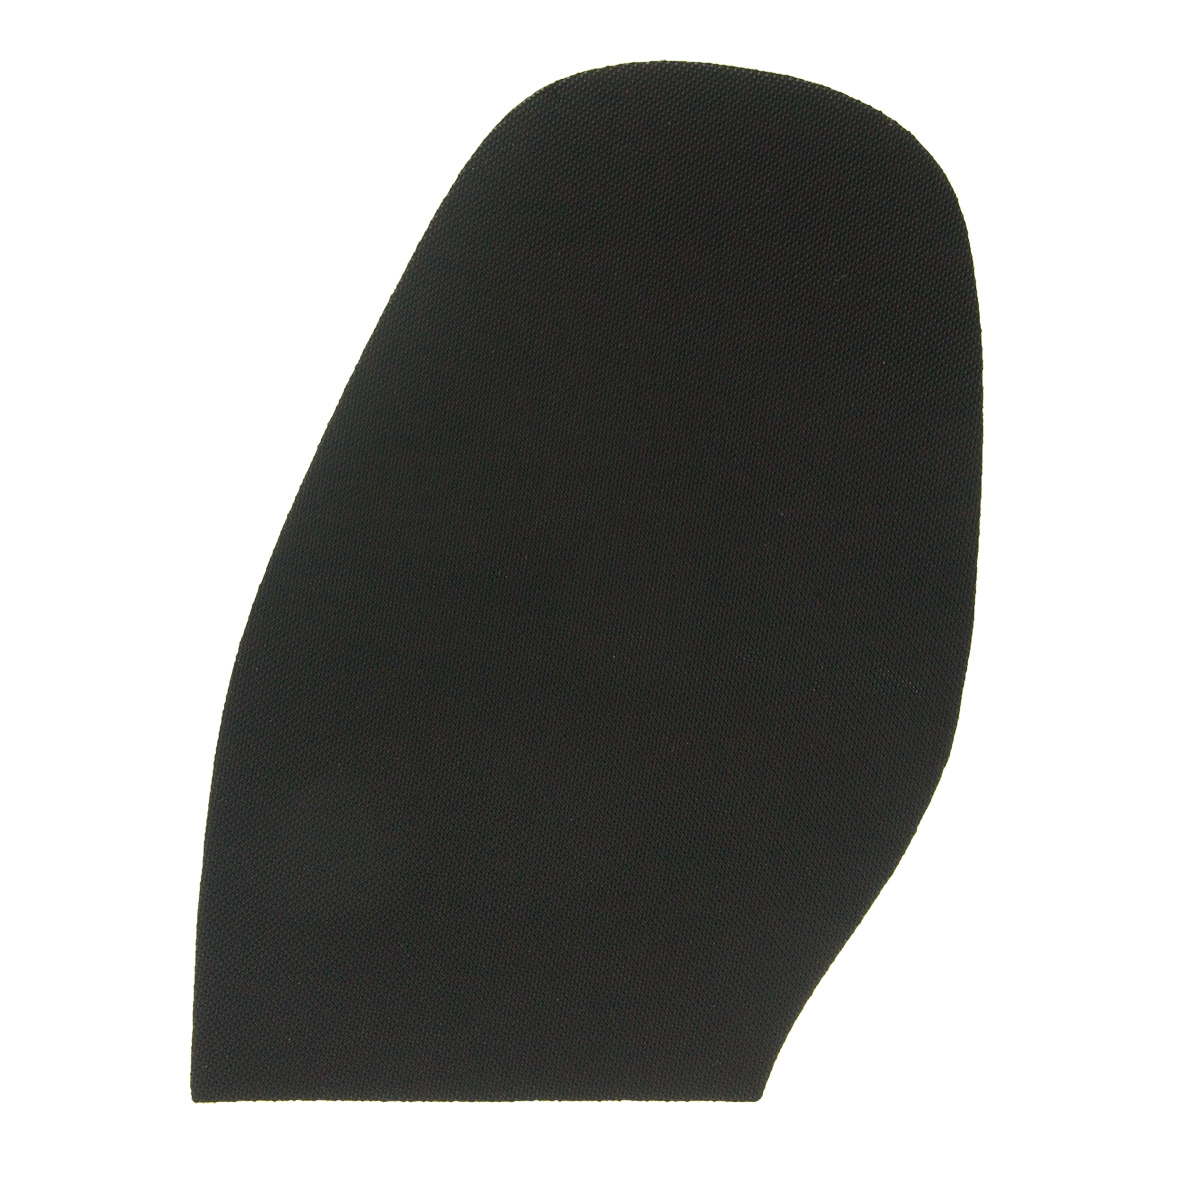 Sohlengummi mit feinem rutschhemmenden Profil 2 mm schwarz für Halbsohlen 20x30cm